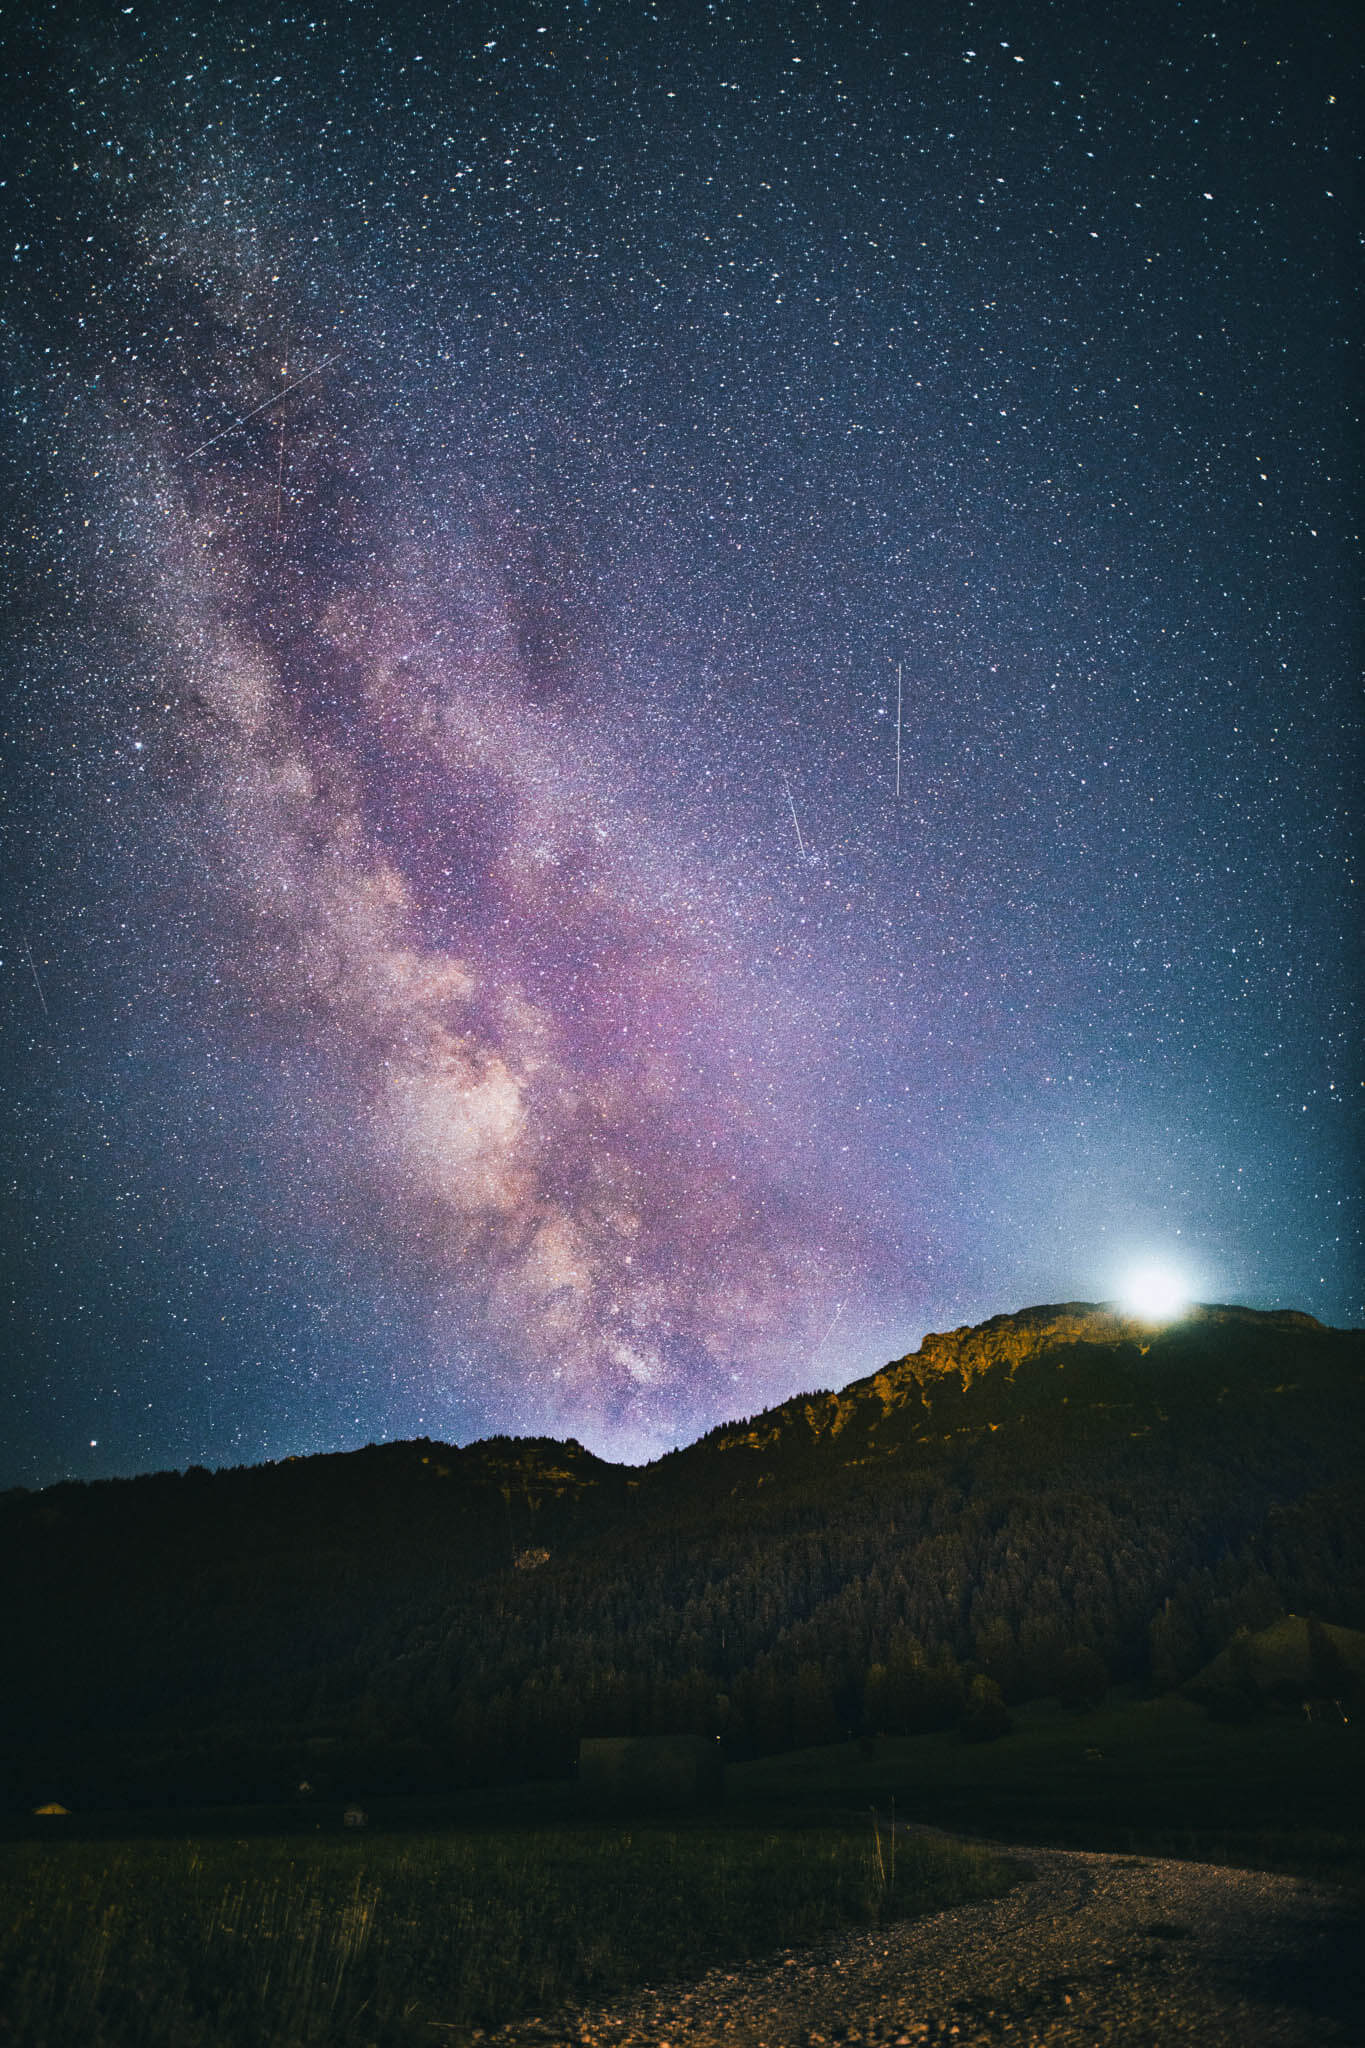 Sterne und Milchstraße fotografieren: Einstellungen, Kameras & Objektive, Tipps & Tricks für Fotos vom Sternenhimmel